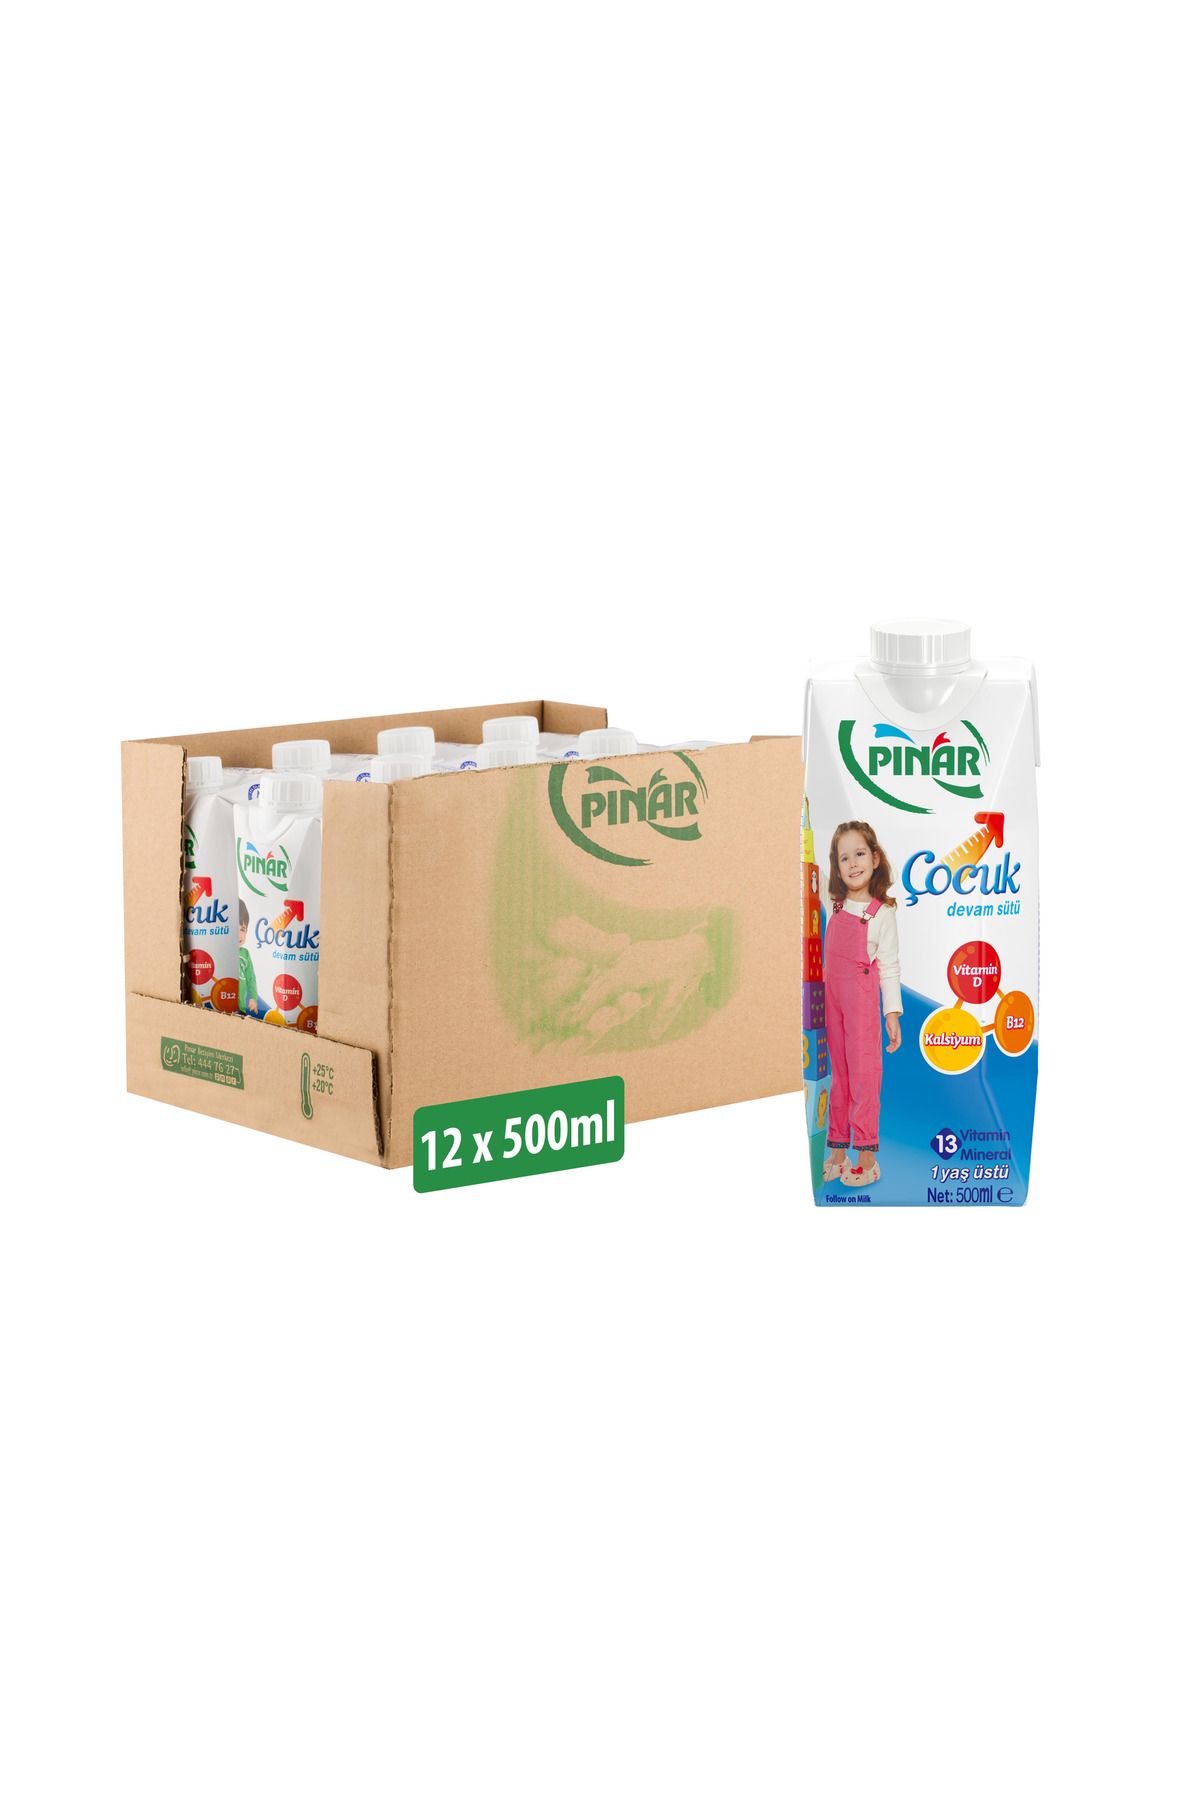 Pınar Çocuk Devam Sütü 500 ml x 12 Adet